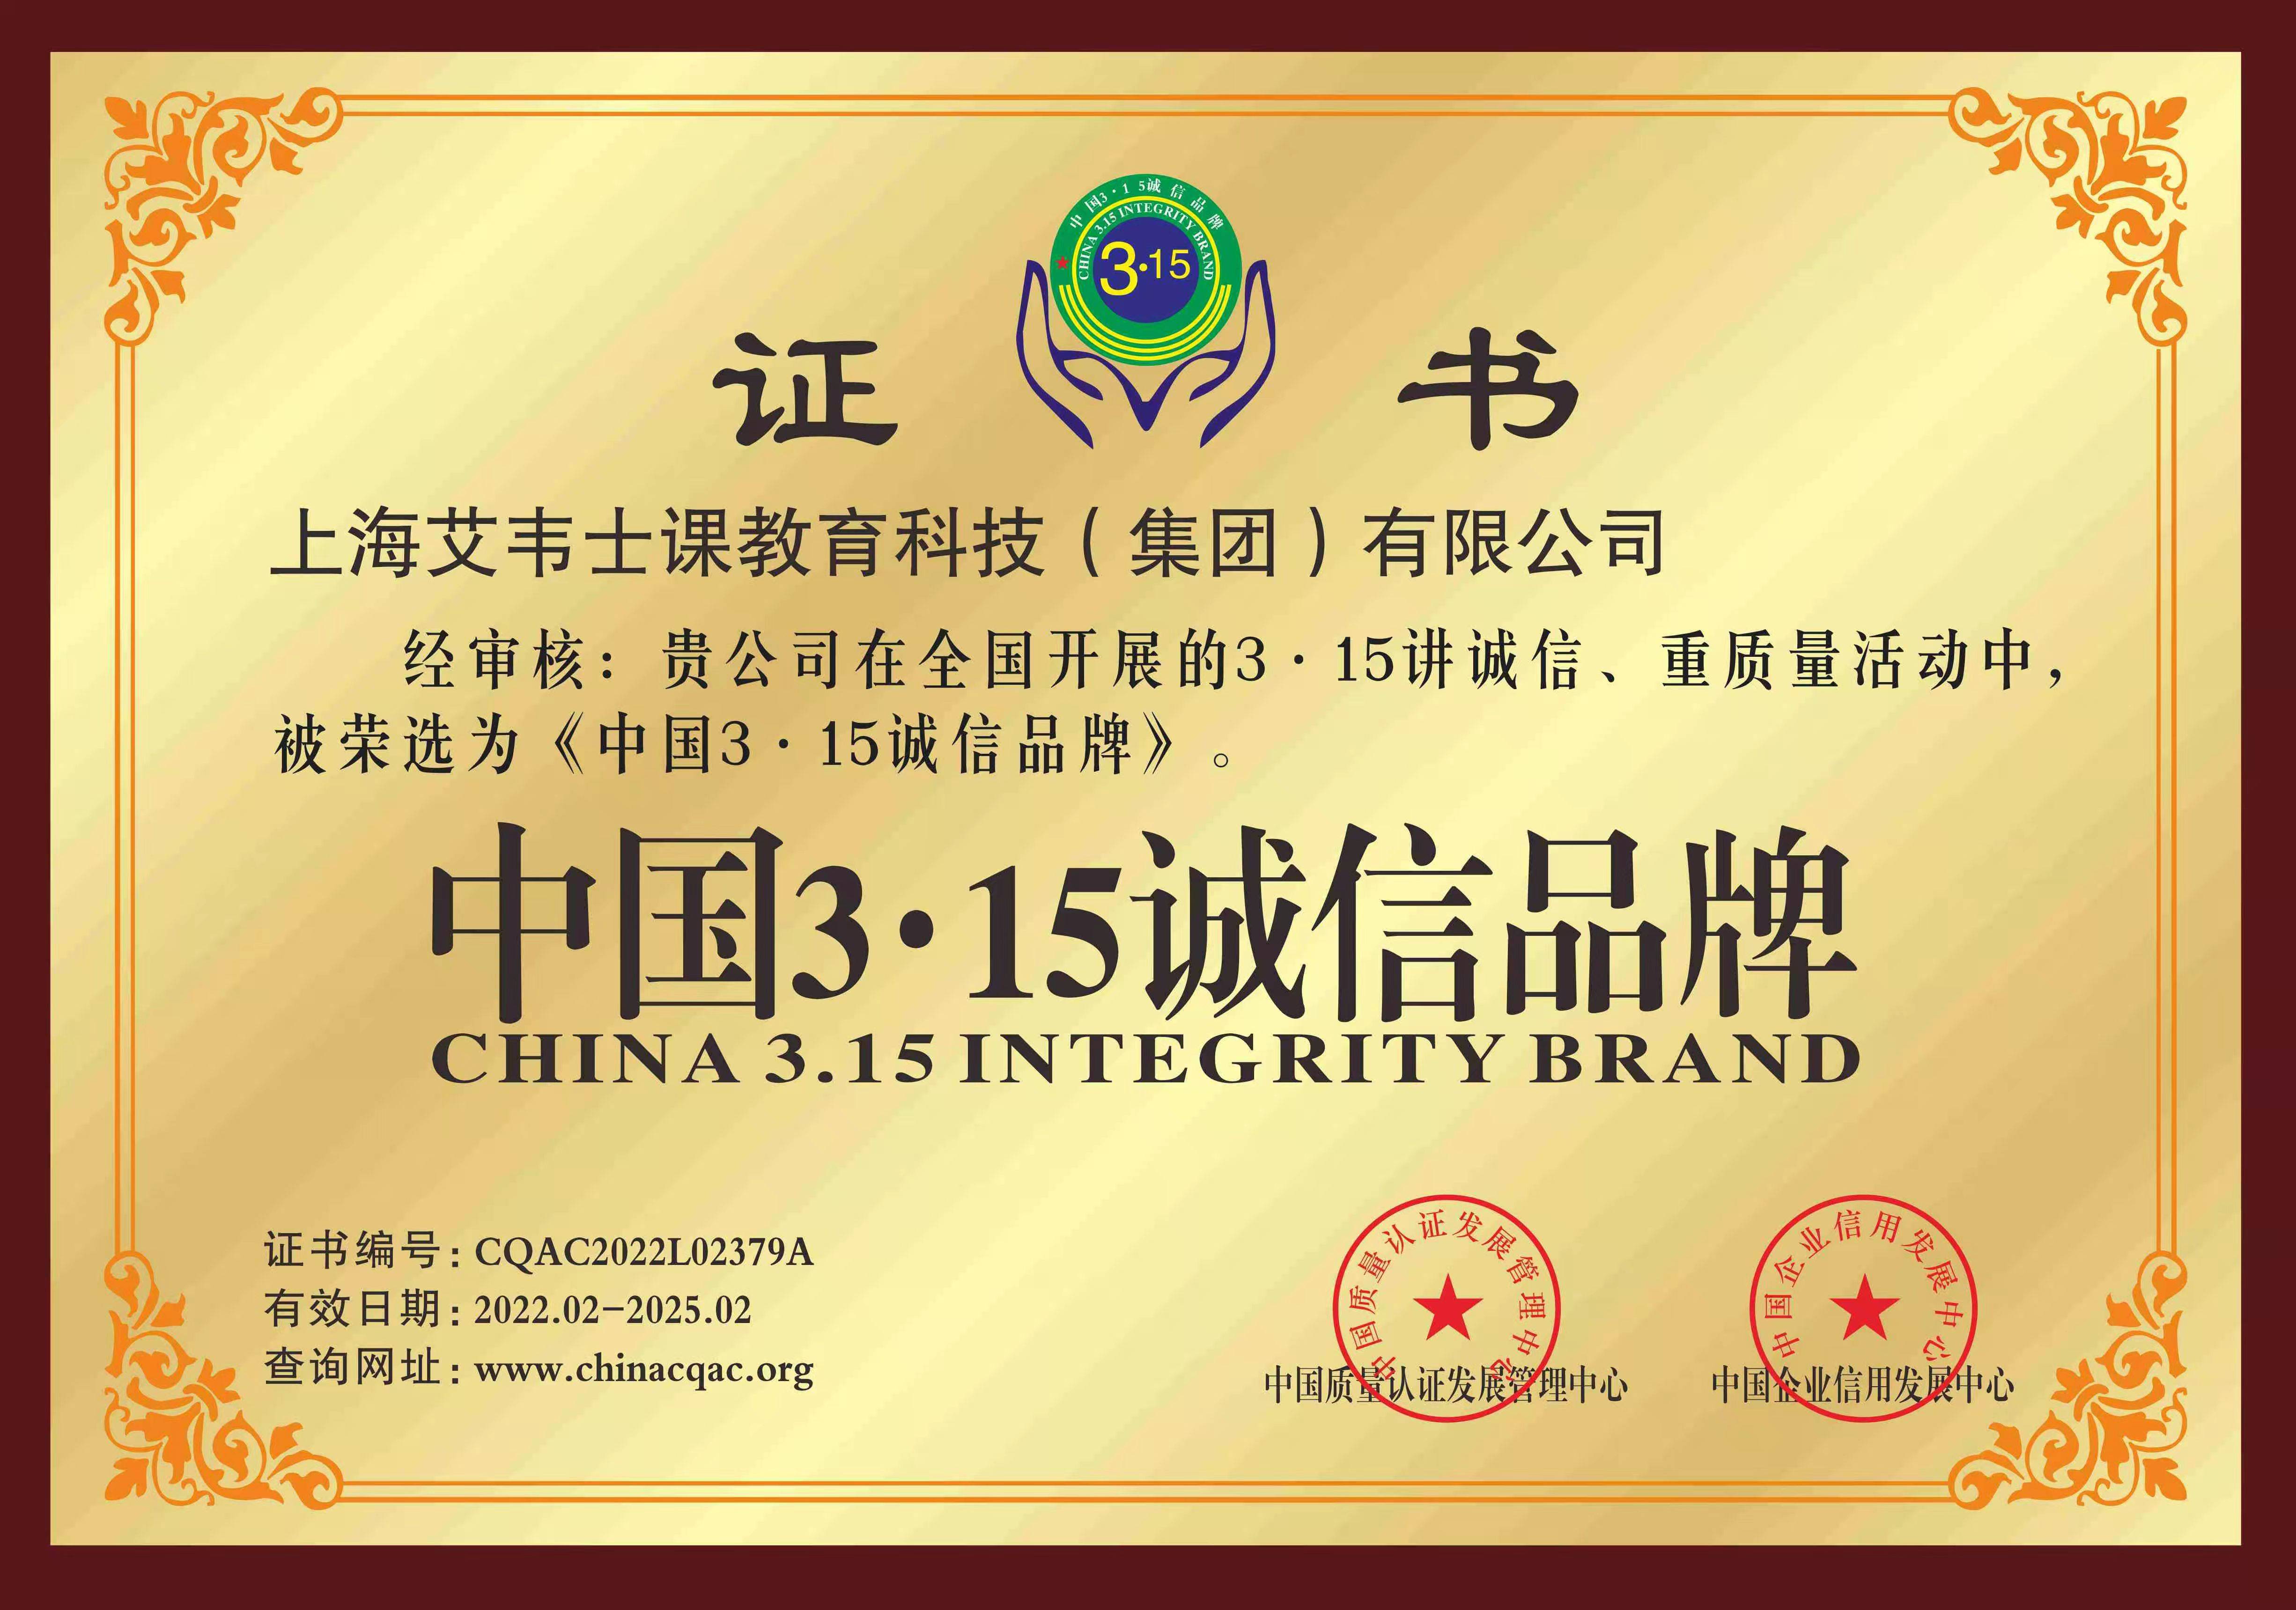 上海艾韦士课教育科技集团有限公司荣获中国315诚信品牌